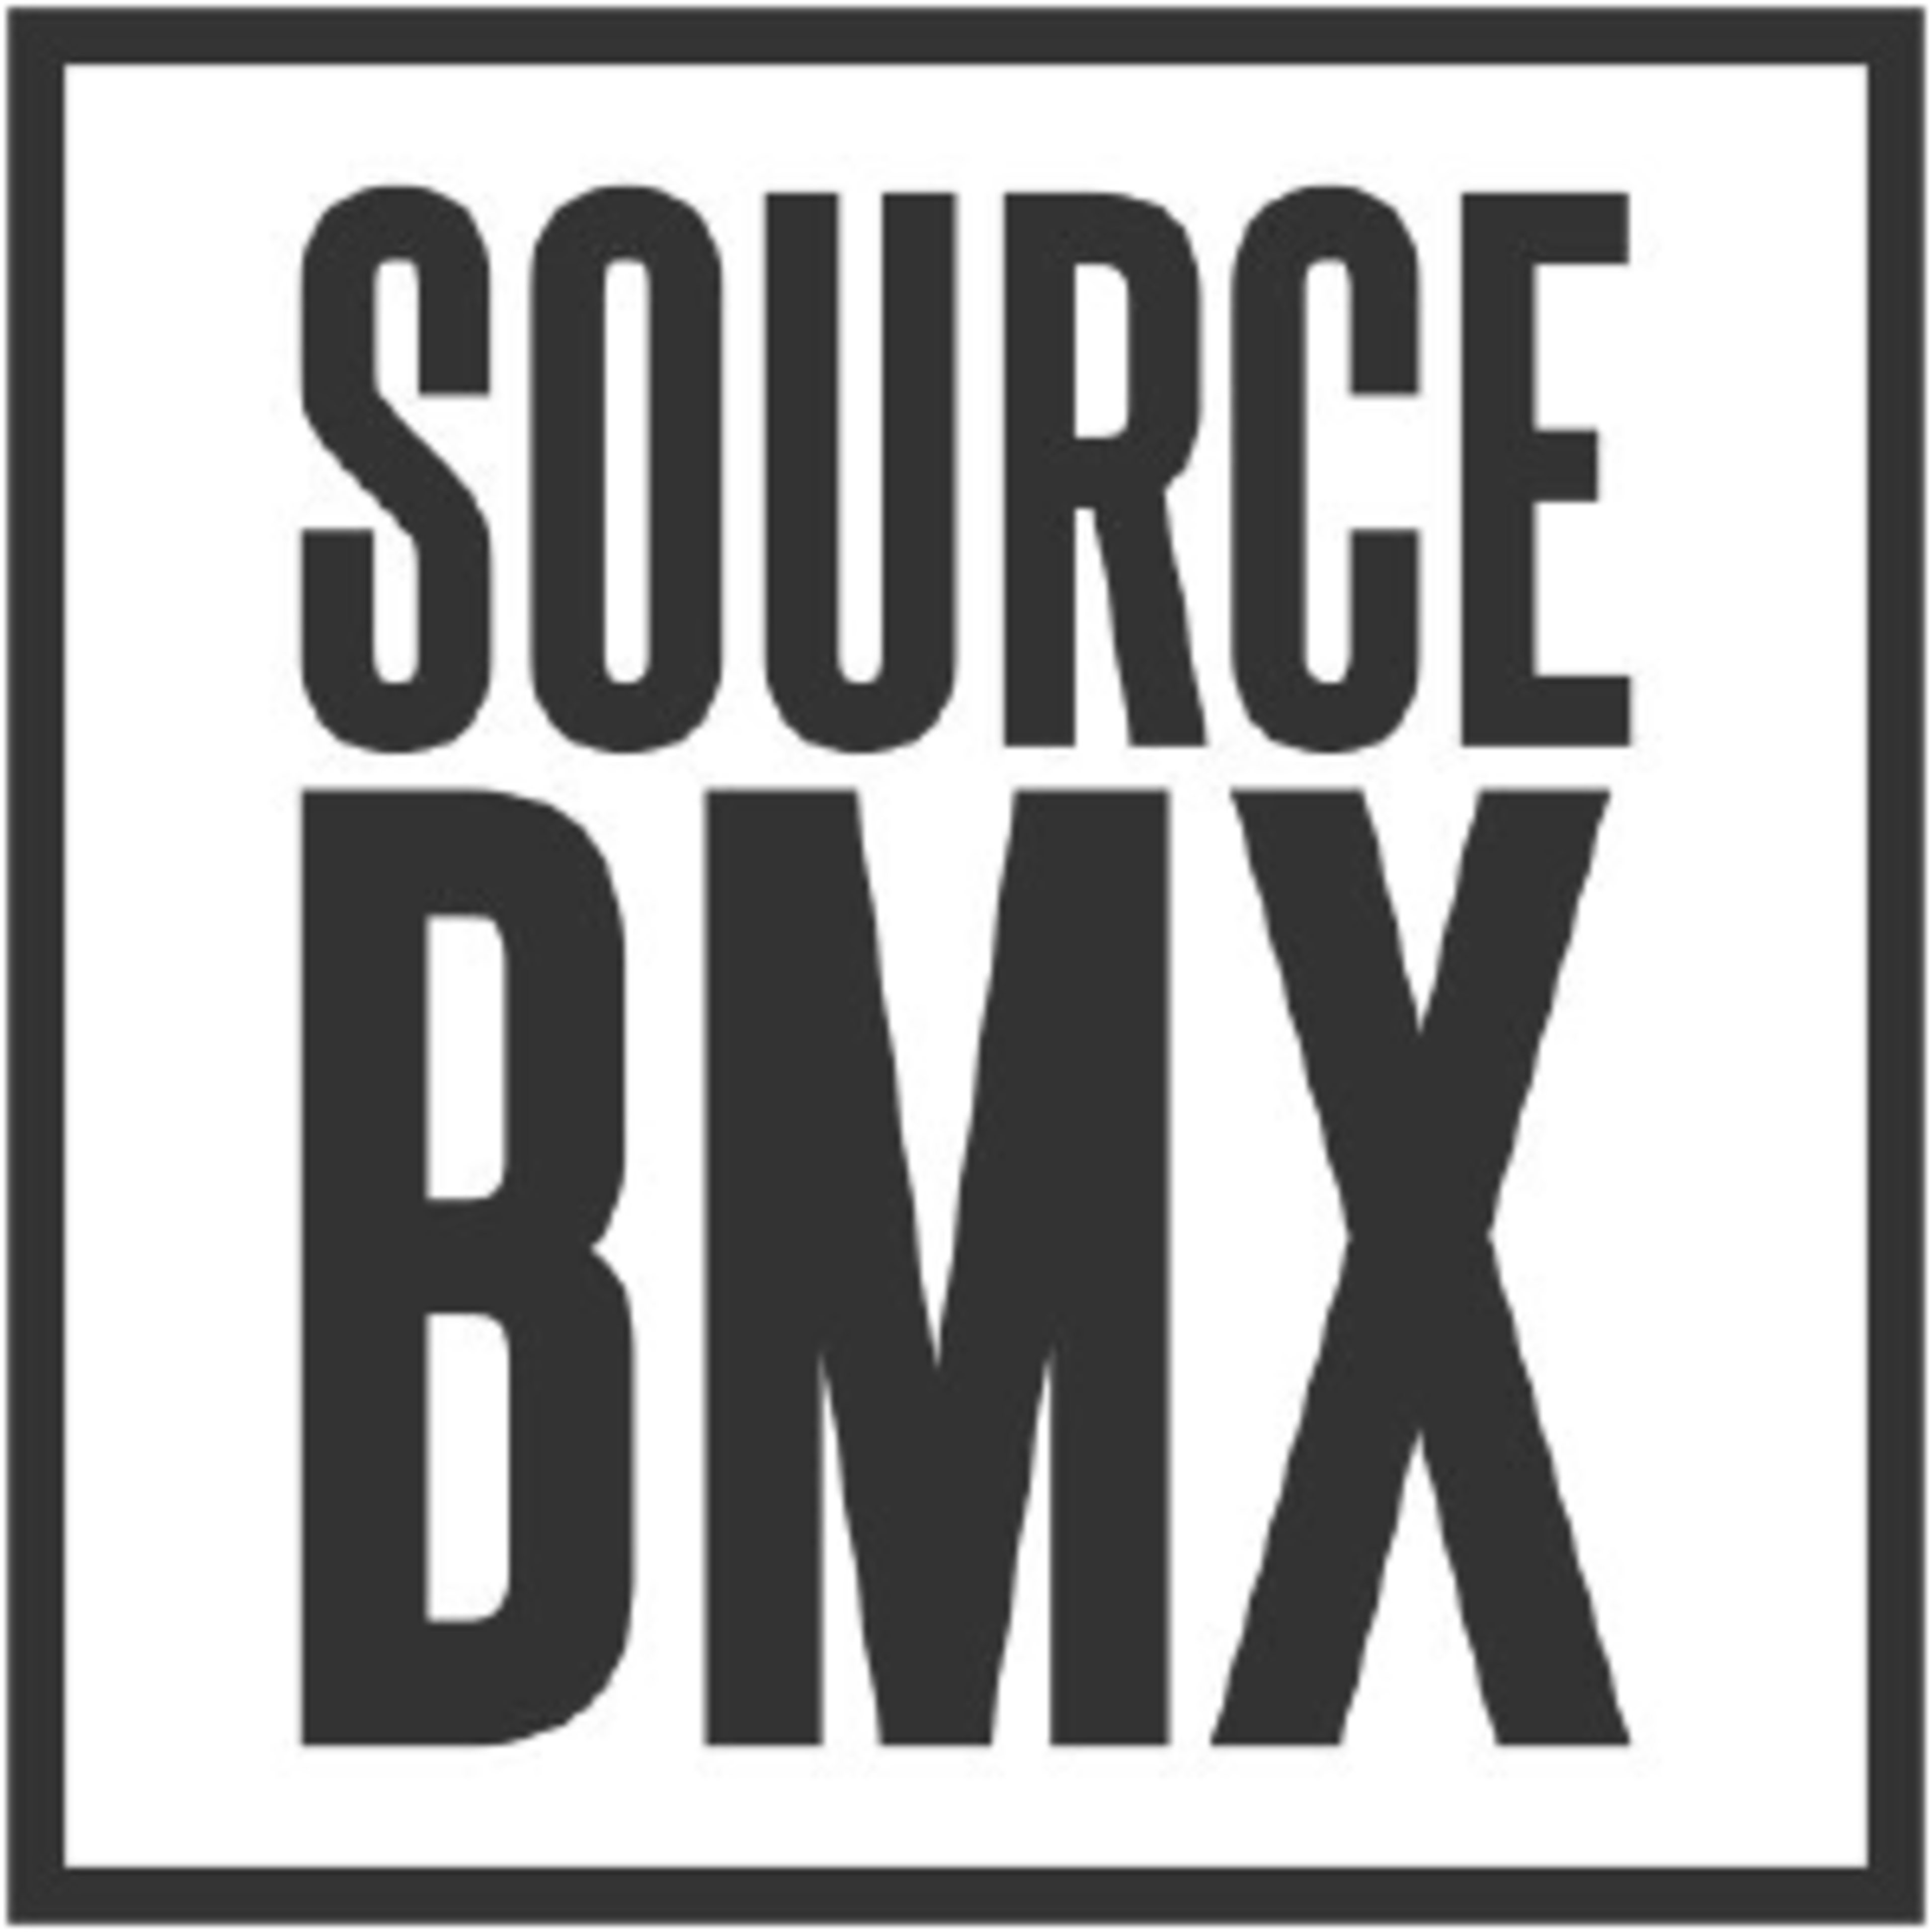 SourcebmxCode